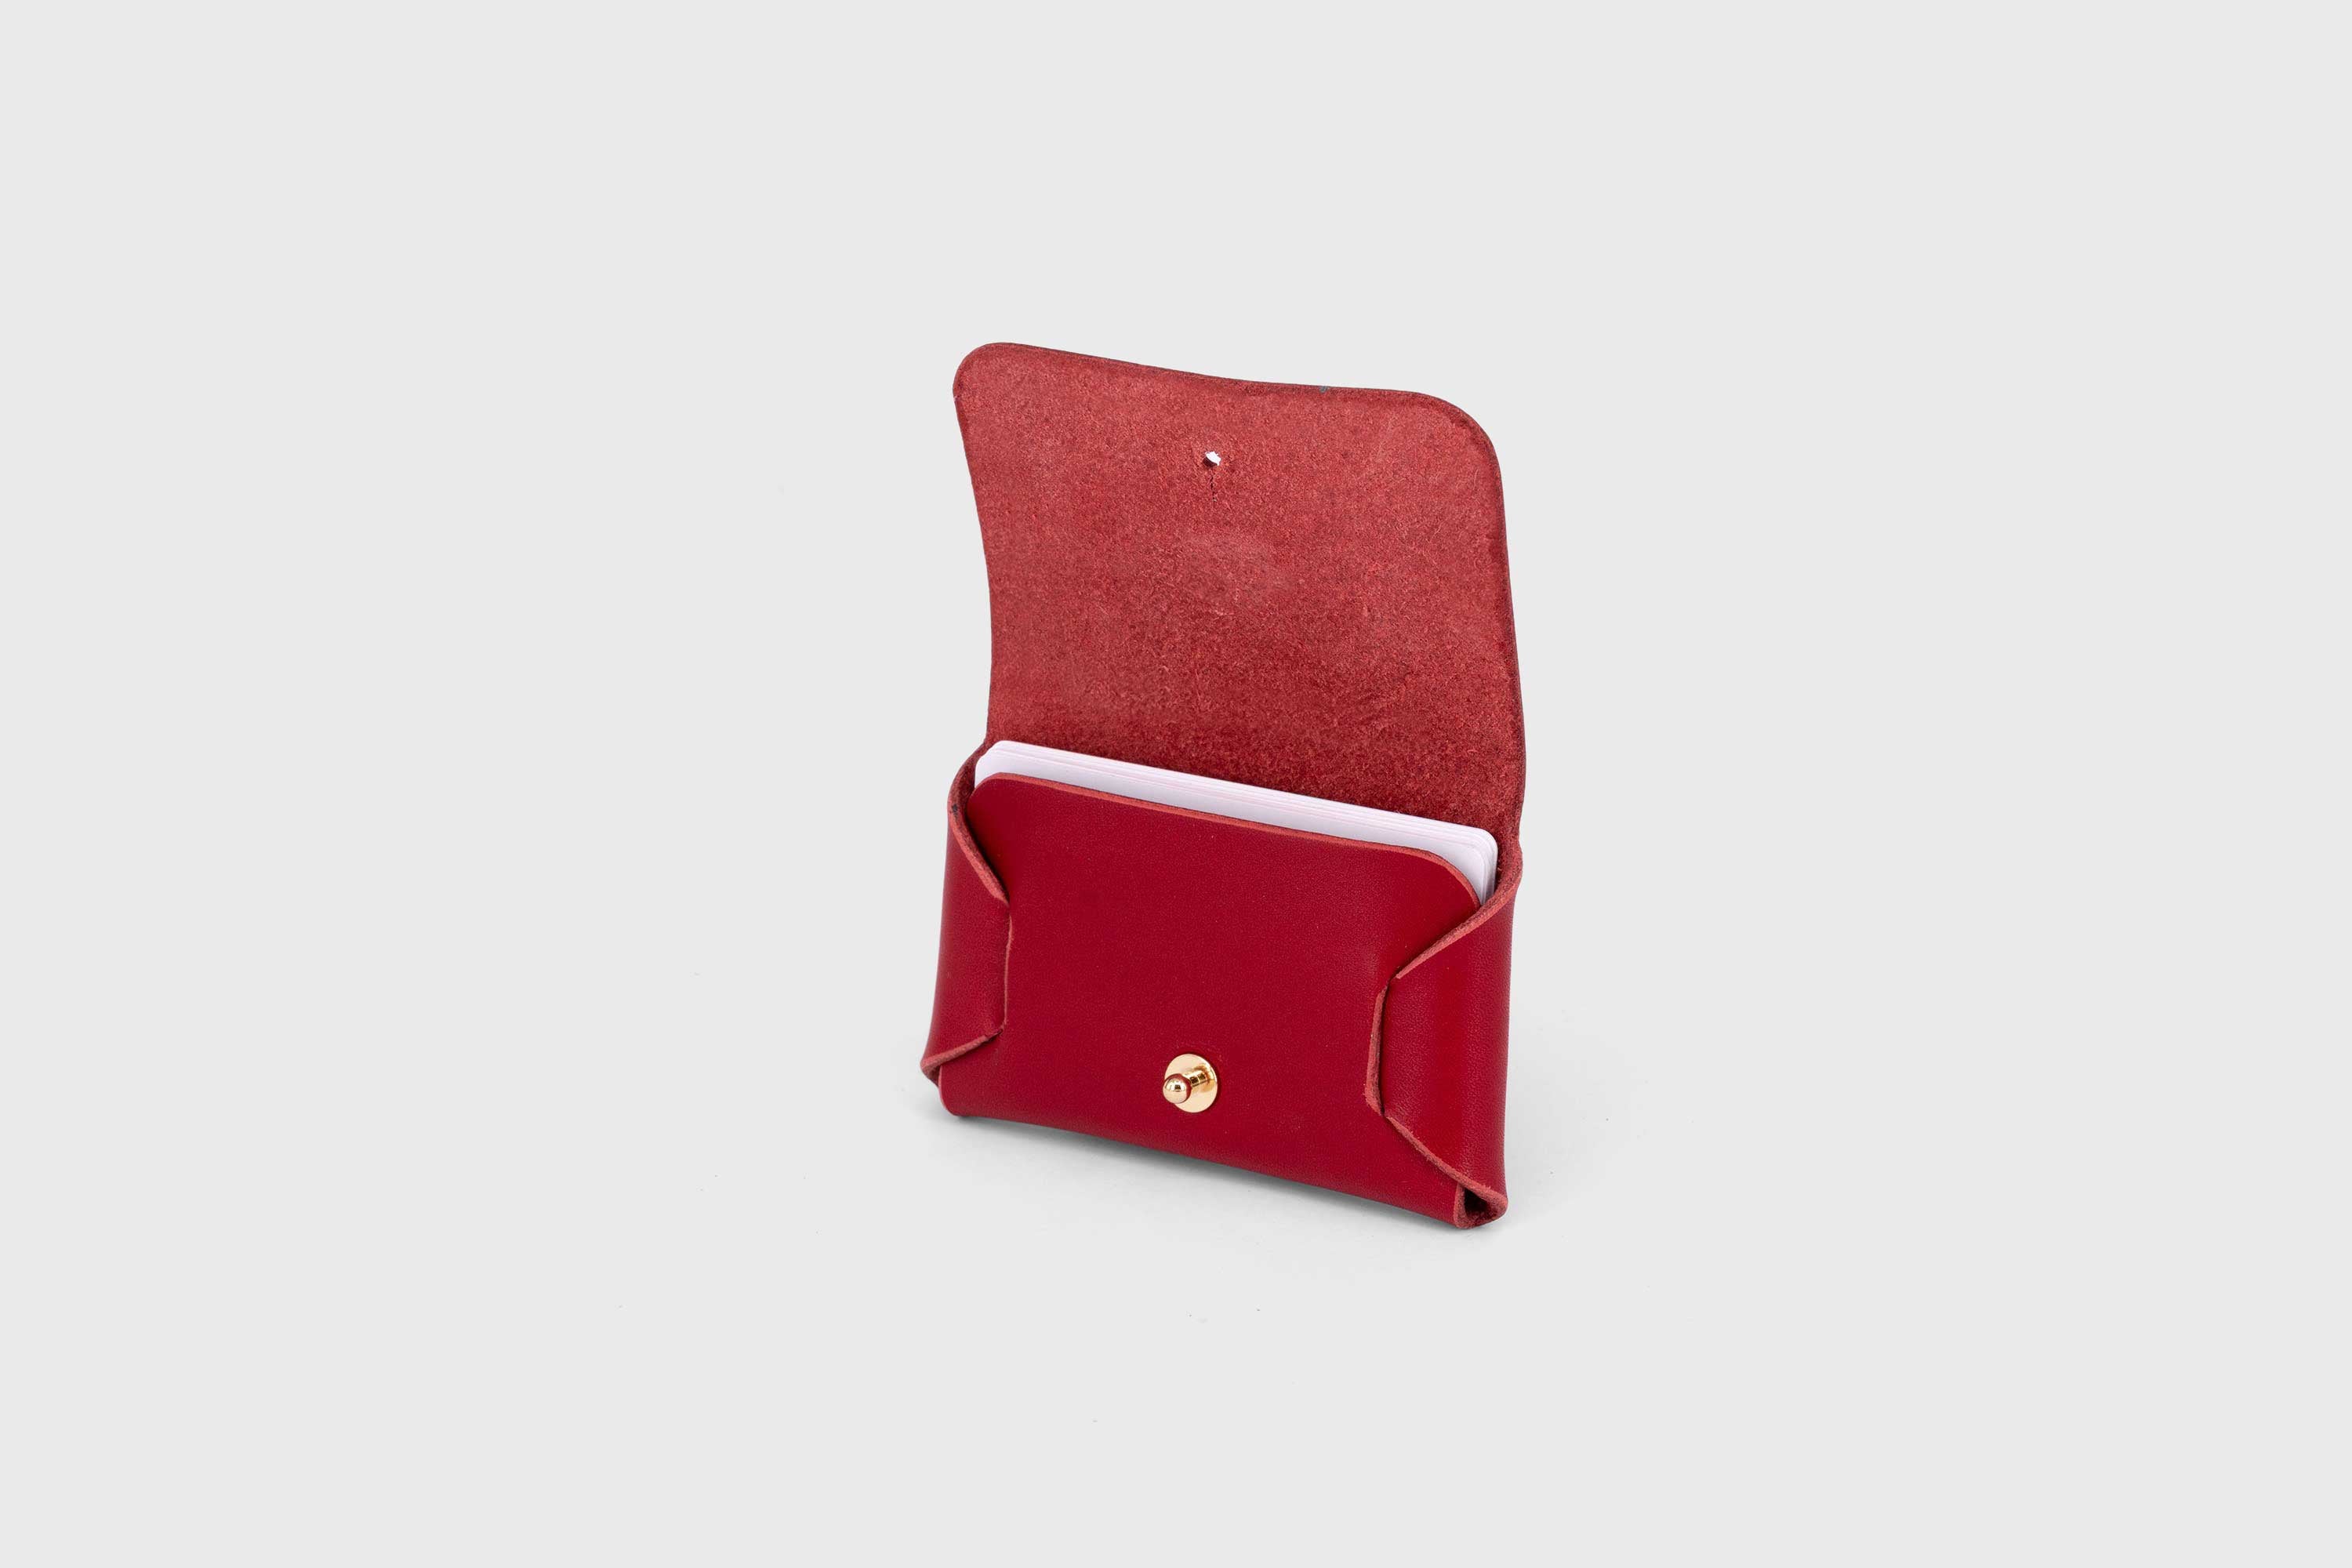 Leather wallet cardholder horizontal design red color minimalist design atelier madre manuel dreesmann barcelona